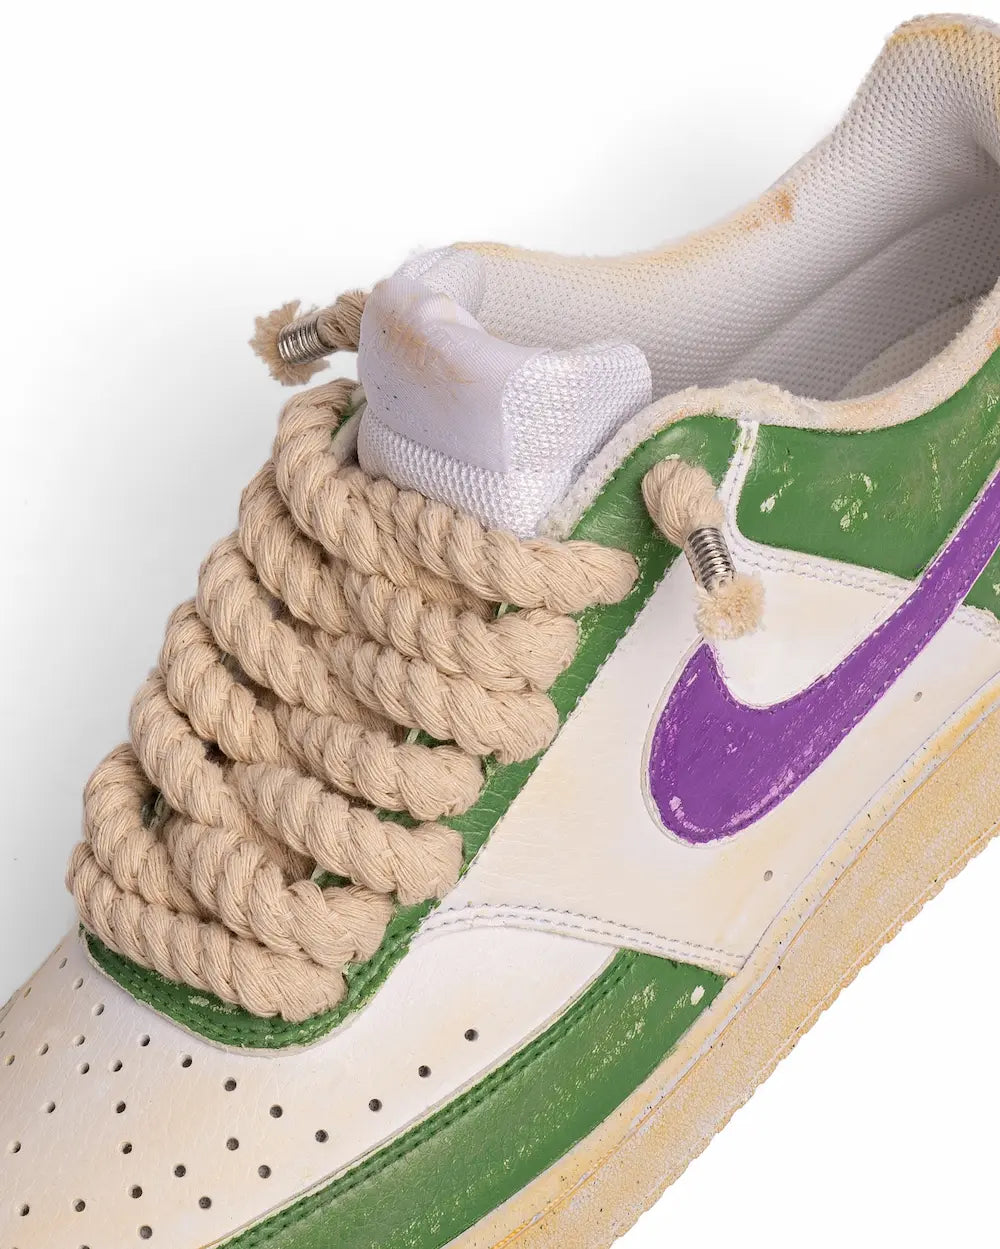 Nike vintage verdi con swoosh viola e lacci in corda beige